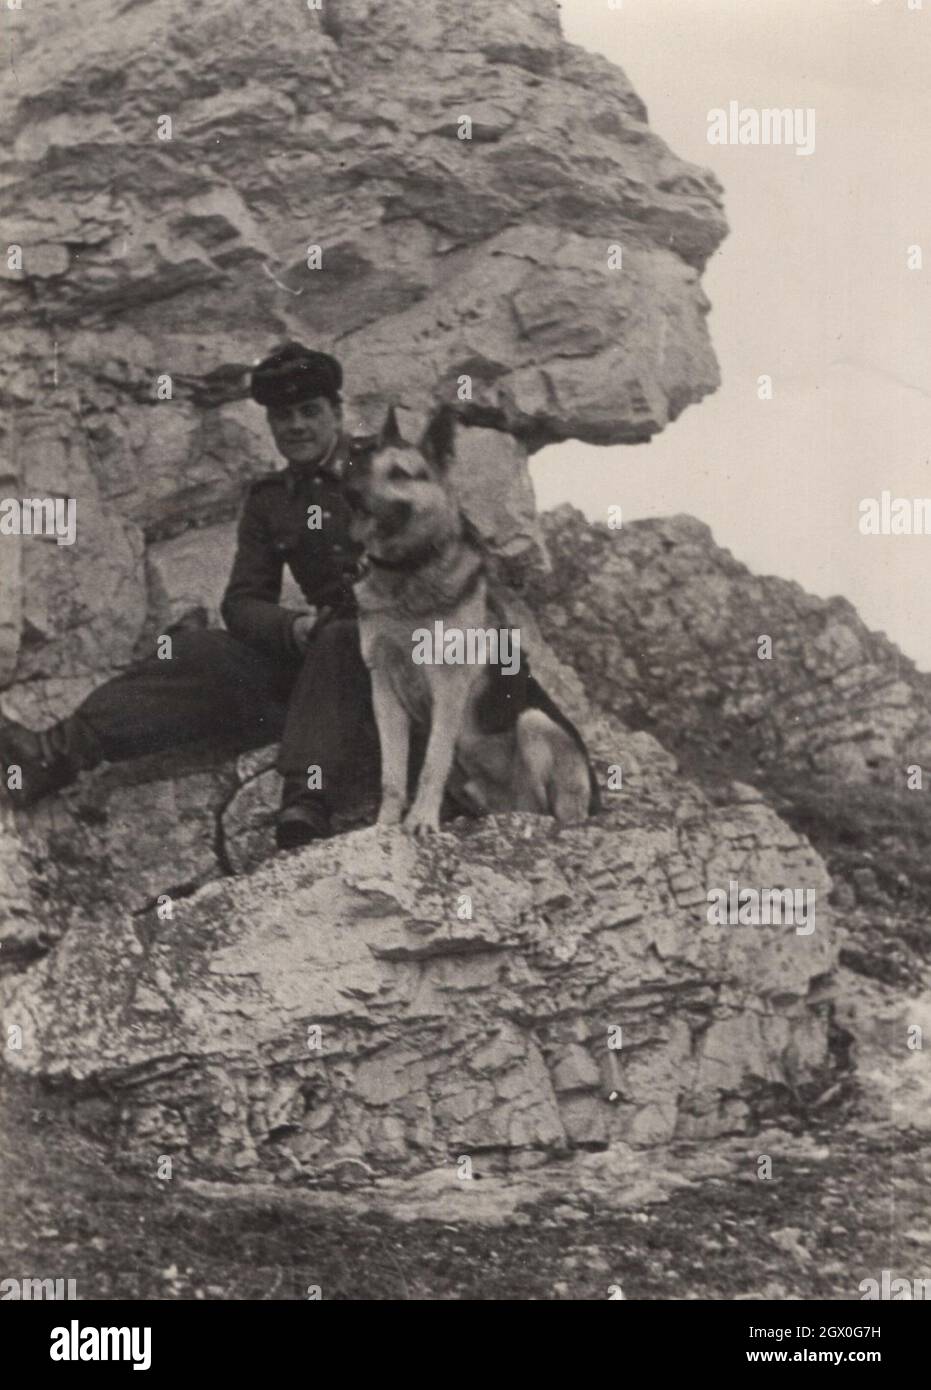 vintage / retro Army / militare tedesco cane pastore serie 1. Un soldato sta posando con il suo cane (Pastore tedesco) sul campo intorno agli anni '50. Egli proviene dall'Europa orientale, forse dall'Ungheria. Fonte: Fotografia originale Foto Stock